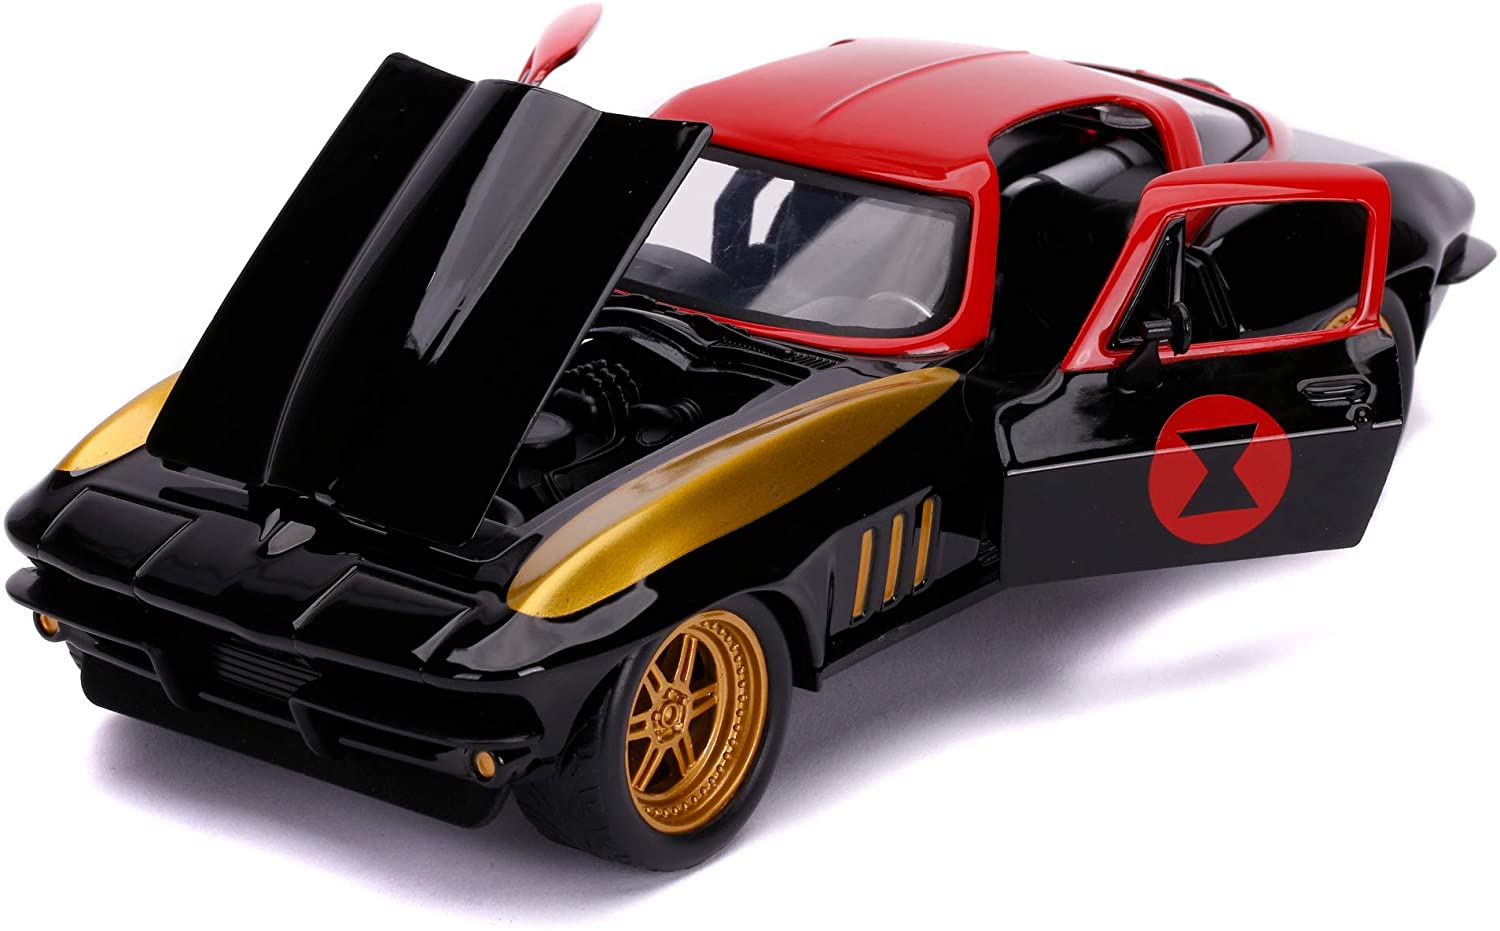 Jada Metals: Avengers Black Widow & 1699 Chevy Corvette